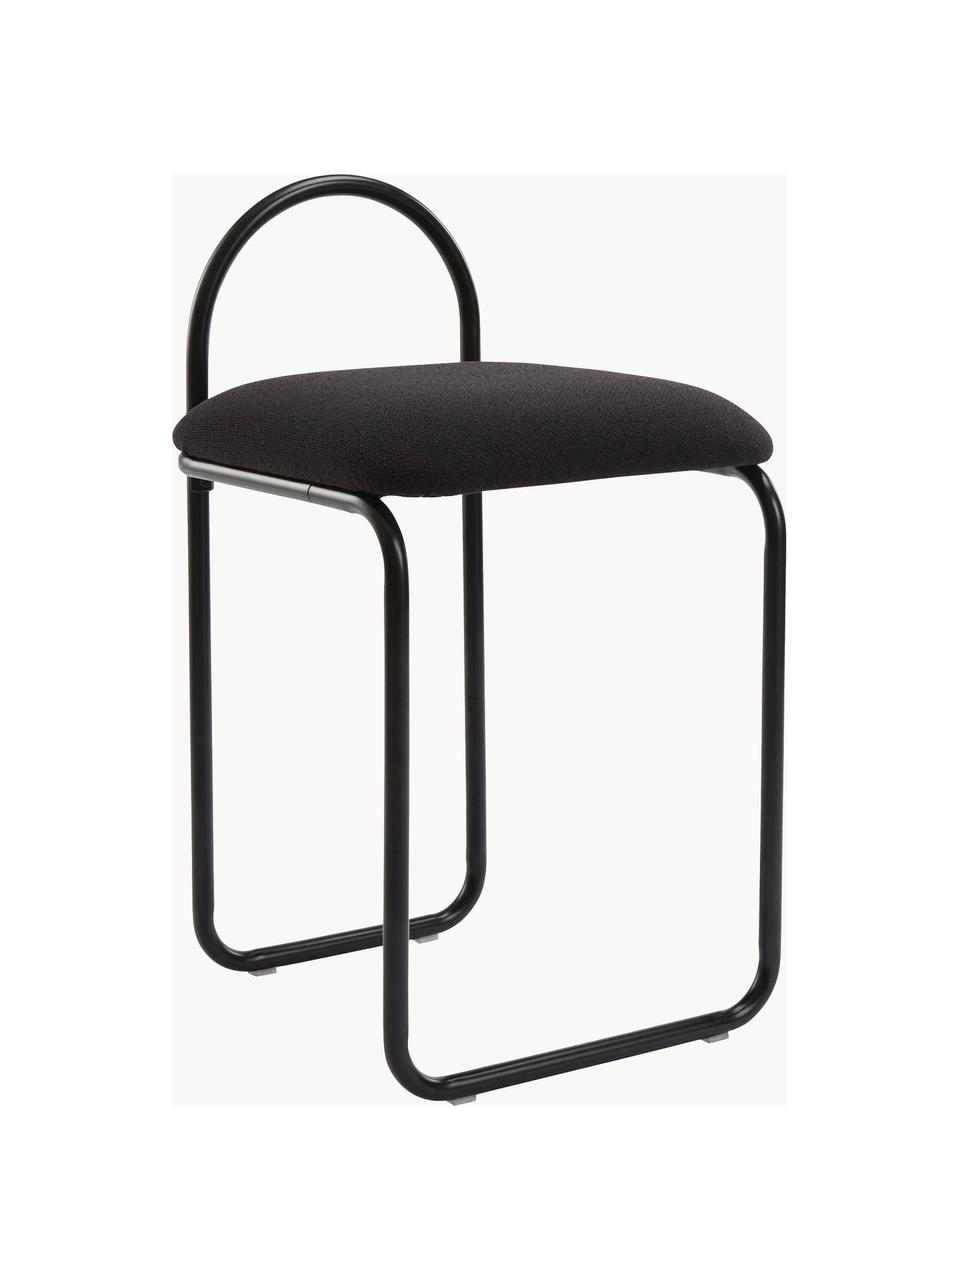 Krzesło z metalu Angul, Tapicerka: 100% poliester, Stelaż: stal powlekana, Czarna tkanina, S 37 x G 39 cm